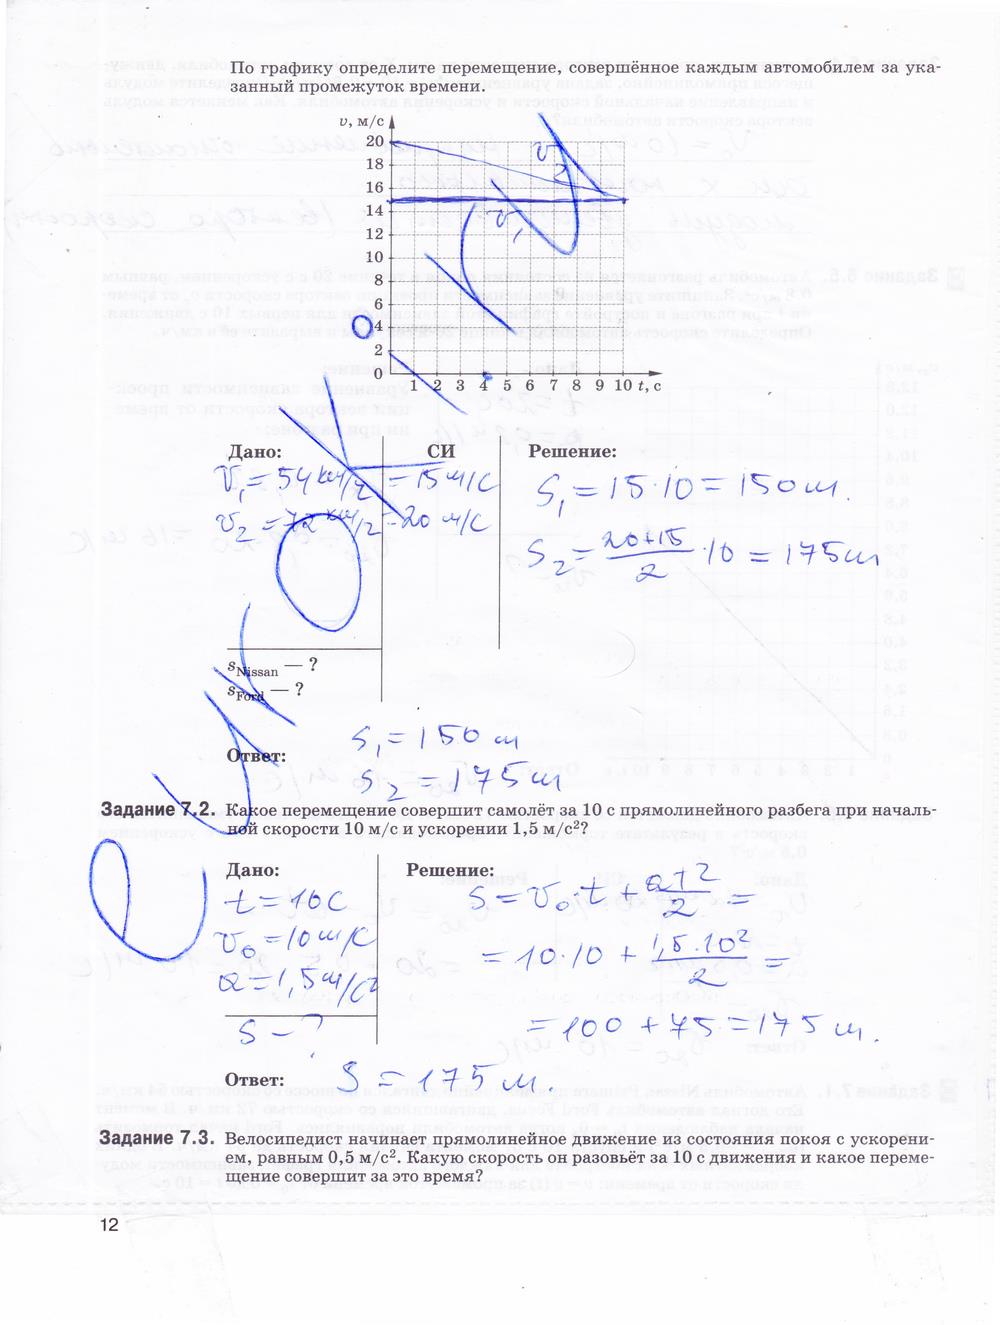 гдз 9 класс рабочая тетрадь страница 12 физика Гутник, Власова